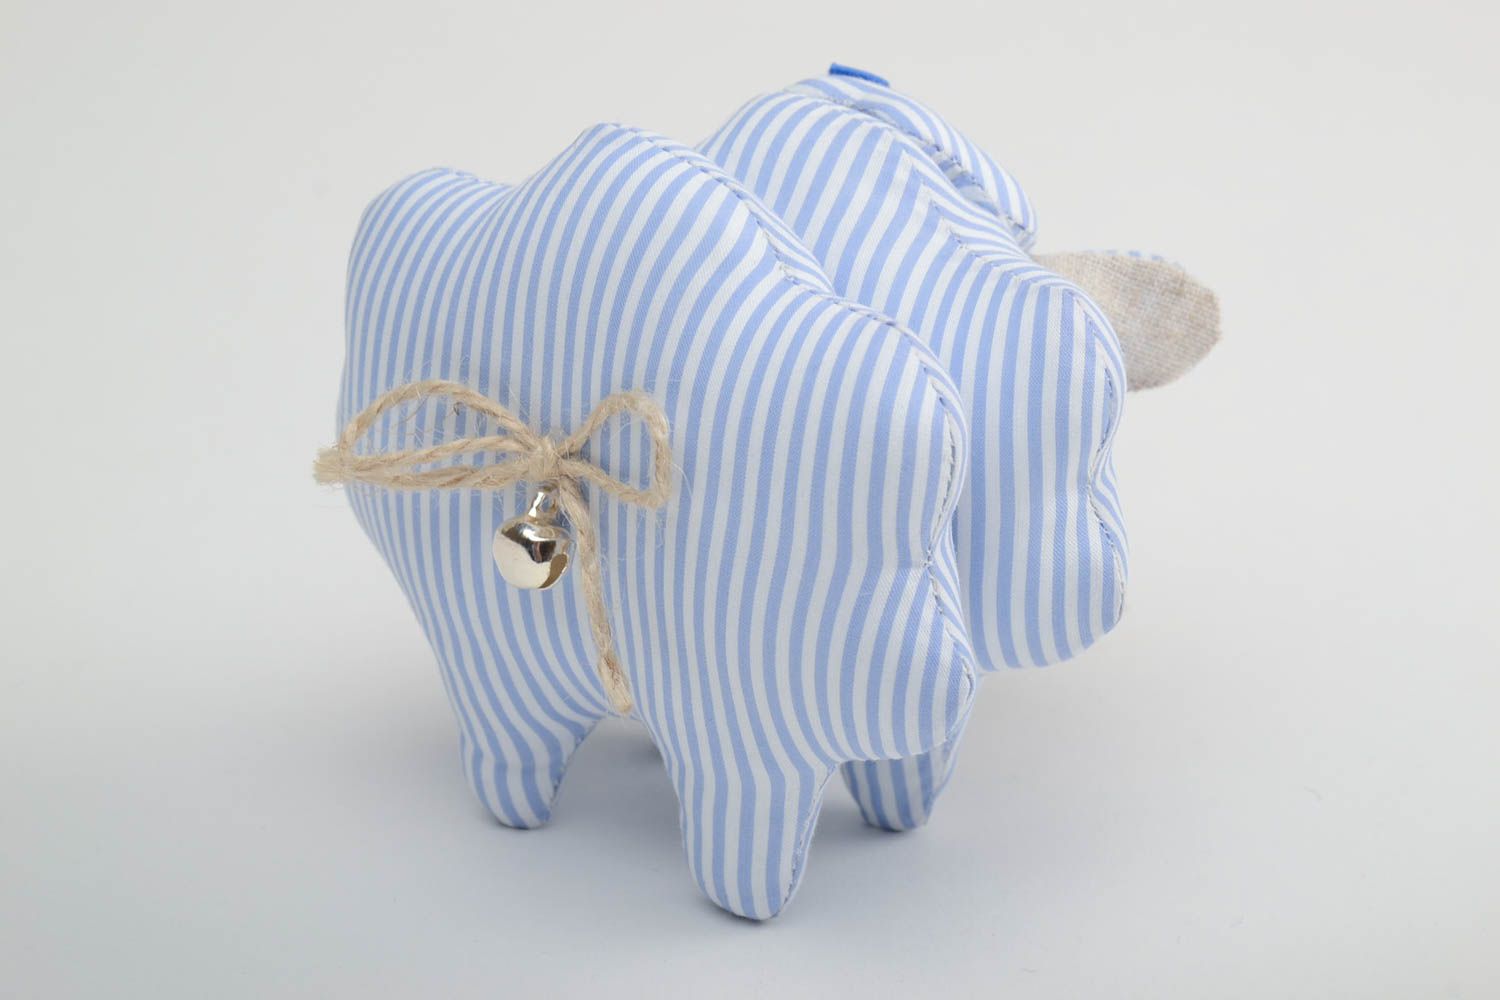 Мягкая тканевая игрушка овечка из льна расписная ручной работы голубая в полоску фото 4